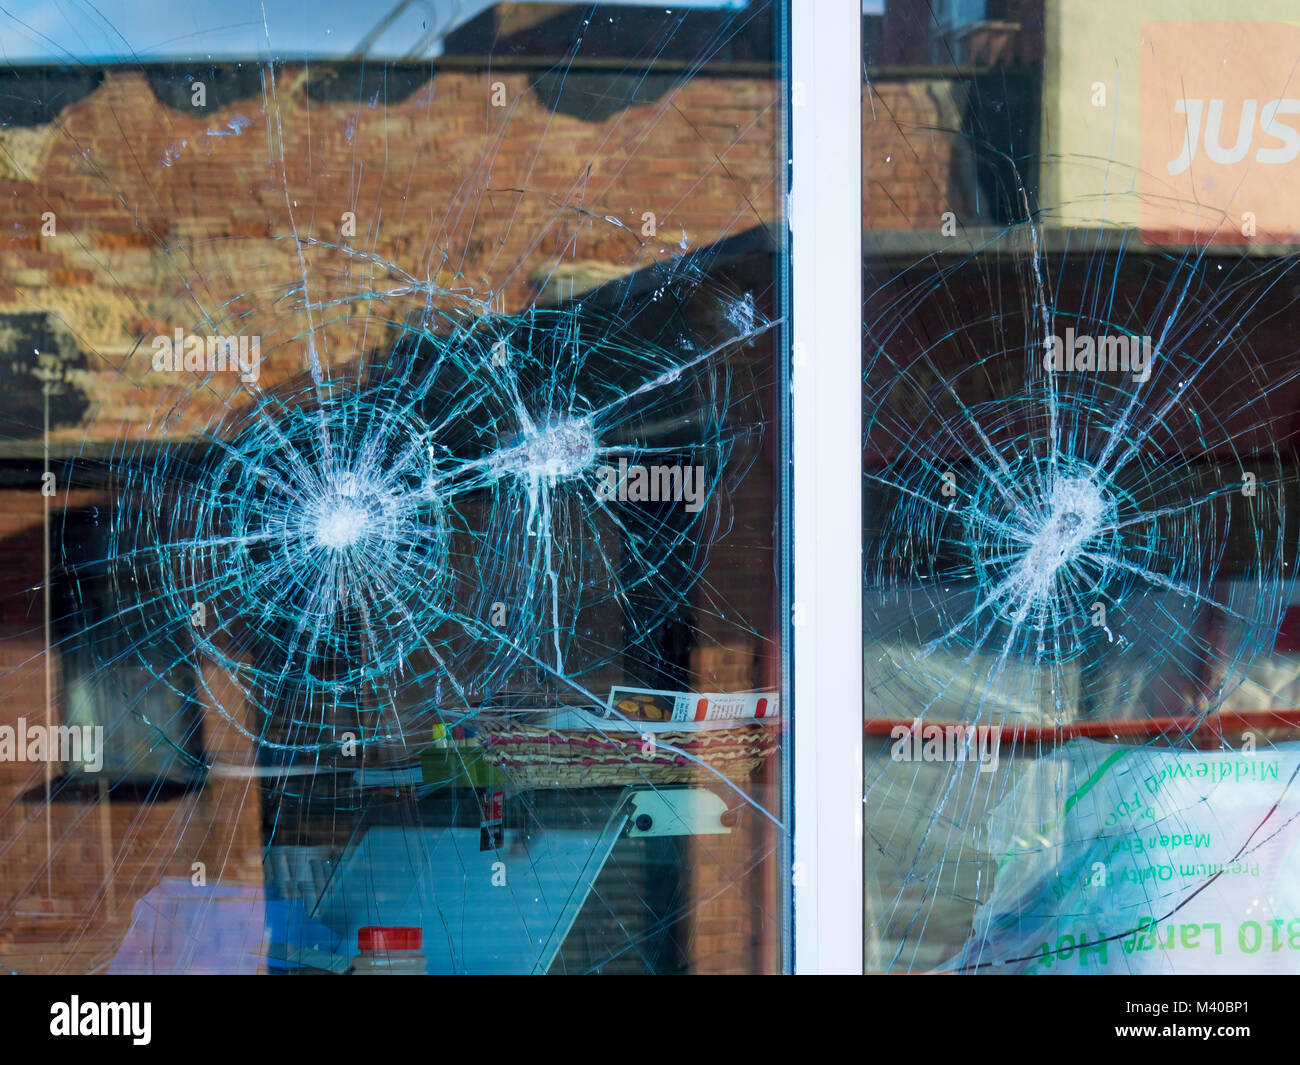 Sachbeschädigungen zwei Schaufenstern von Vandalen beschädigt Stockfoto